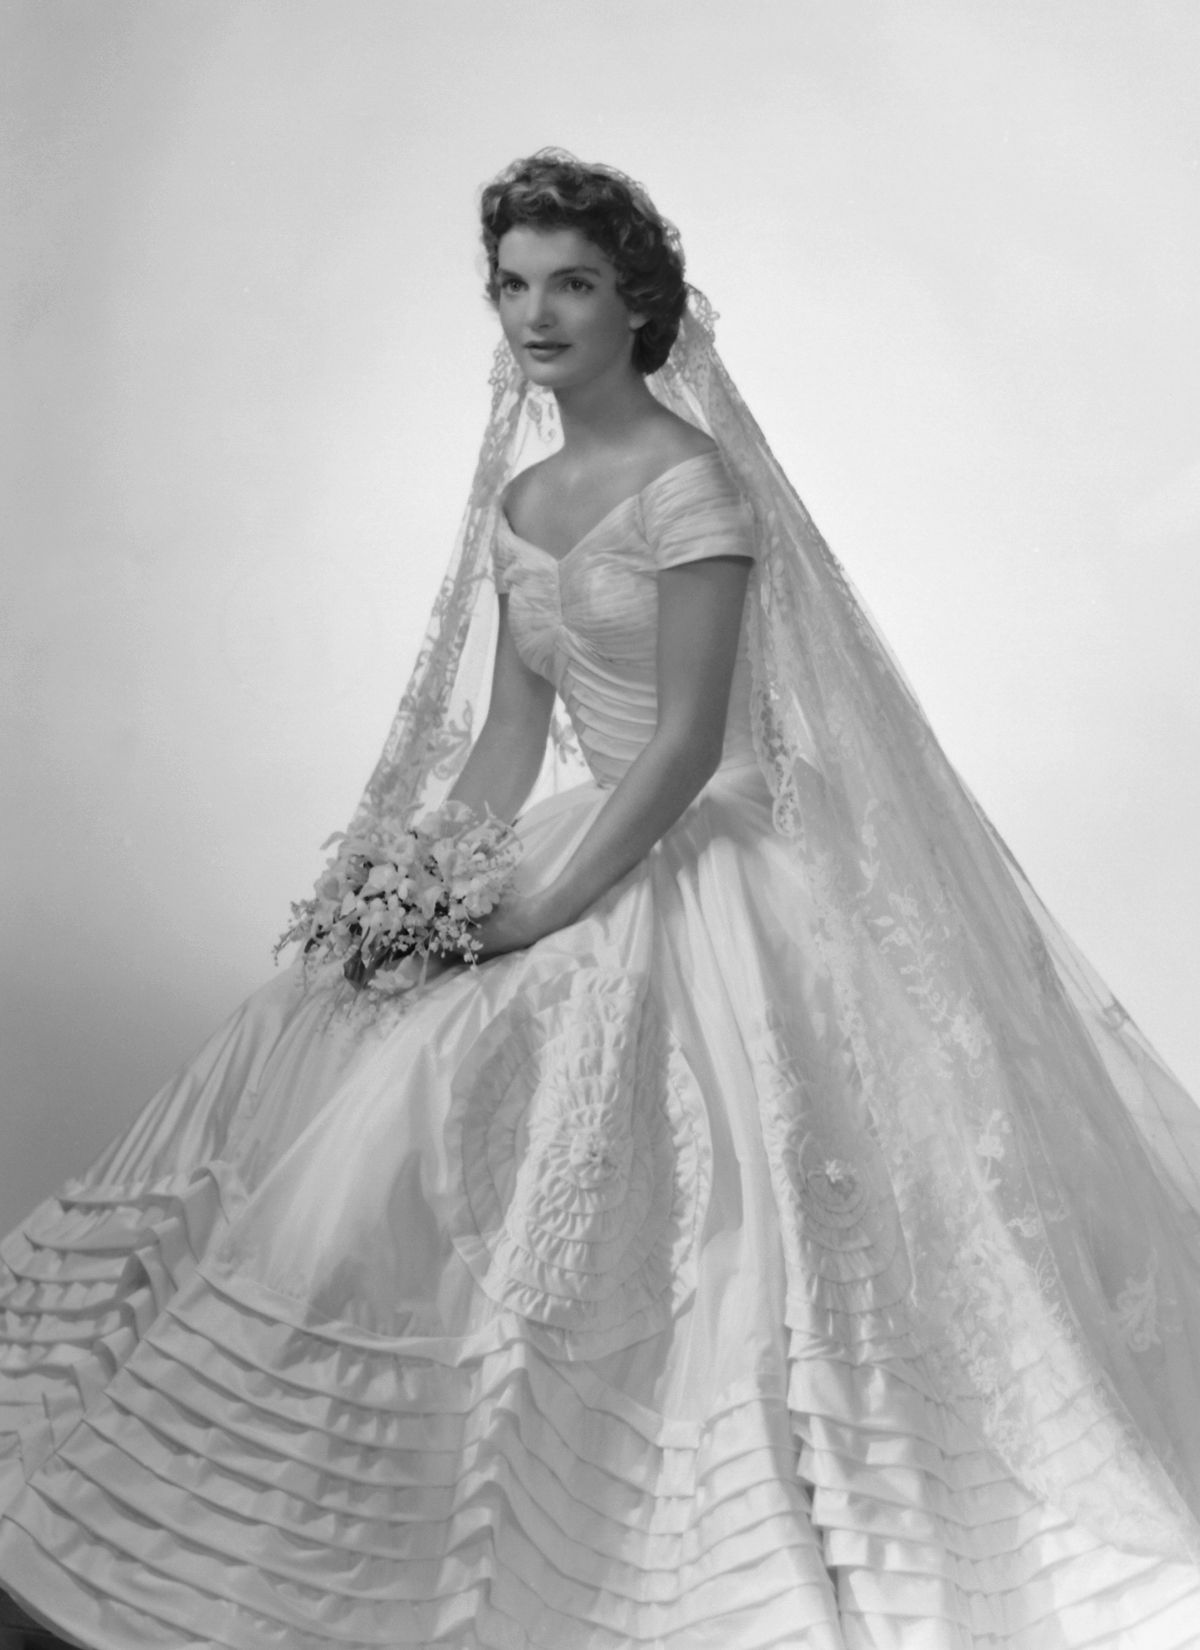 Jackie Kennedy in her wedding dress, designed by Ann Lowe.